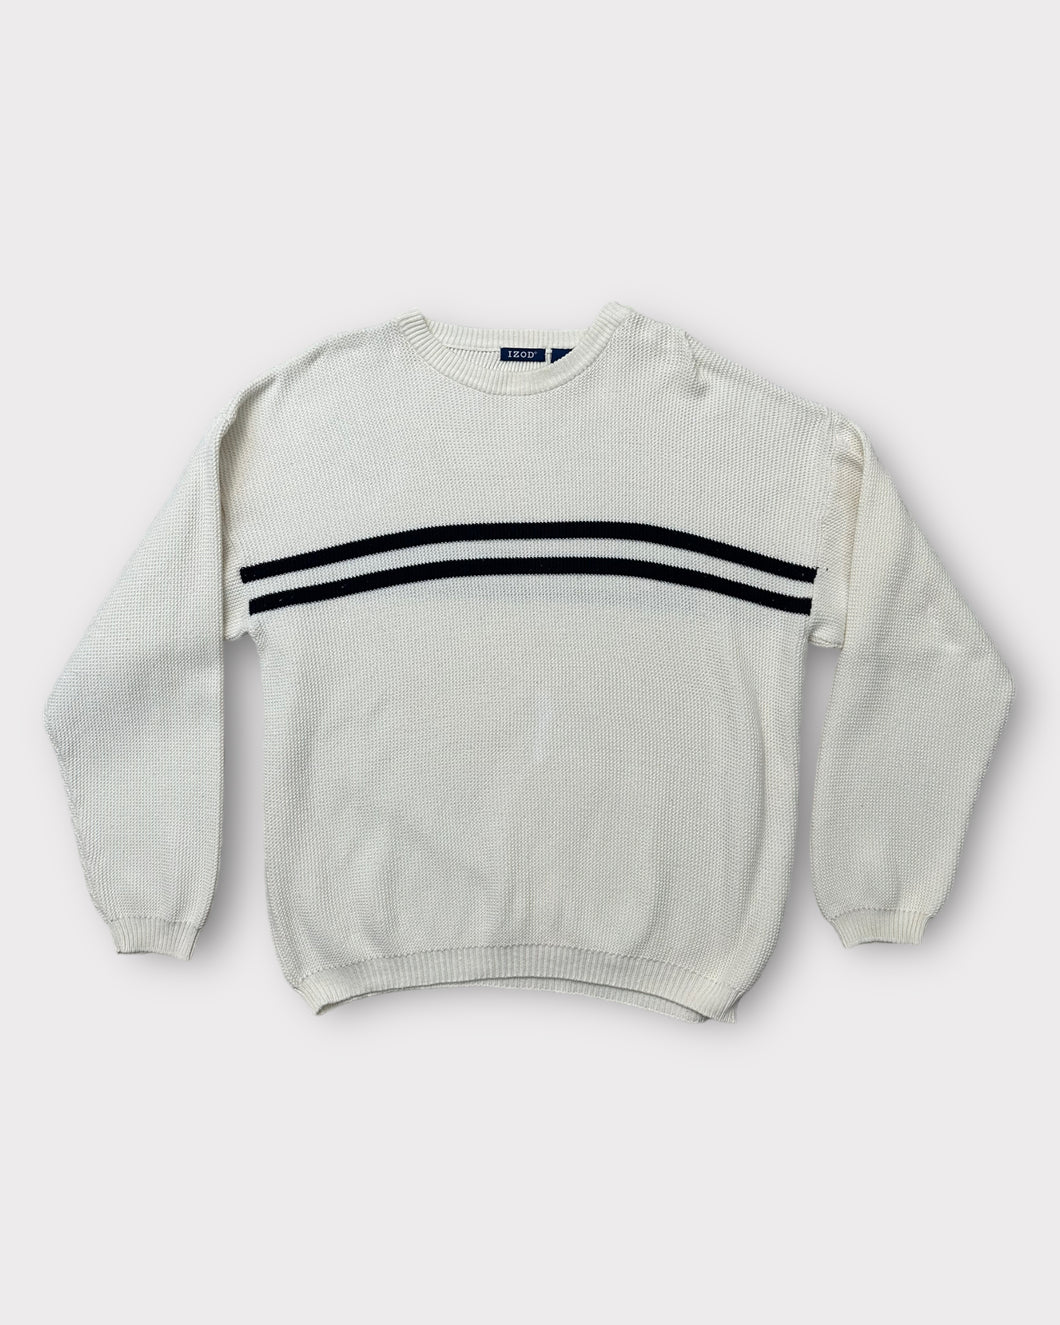 IZOD White & Navy Stripe Waffle Knit Sweater (XL)